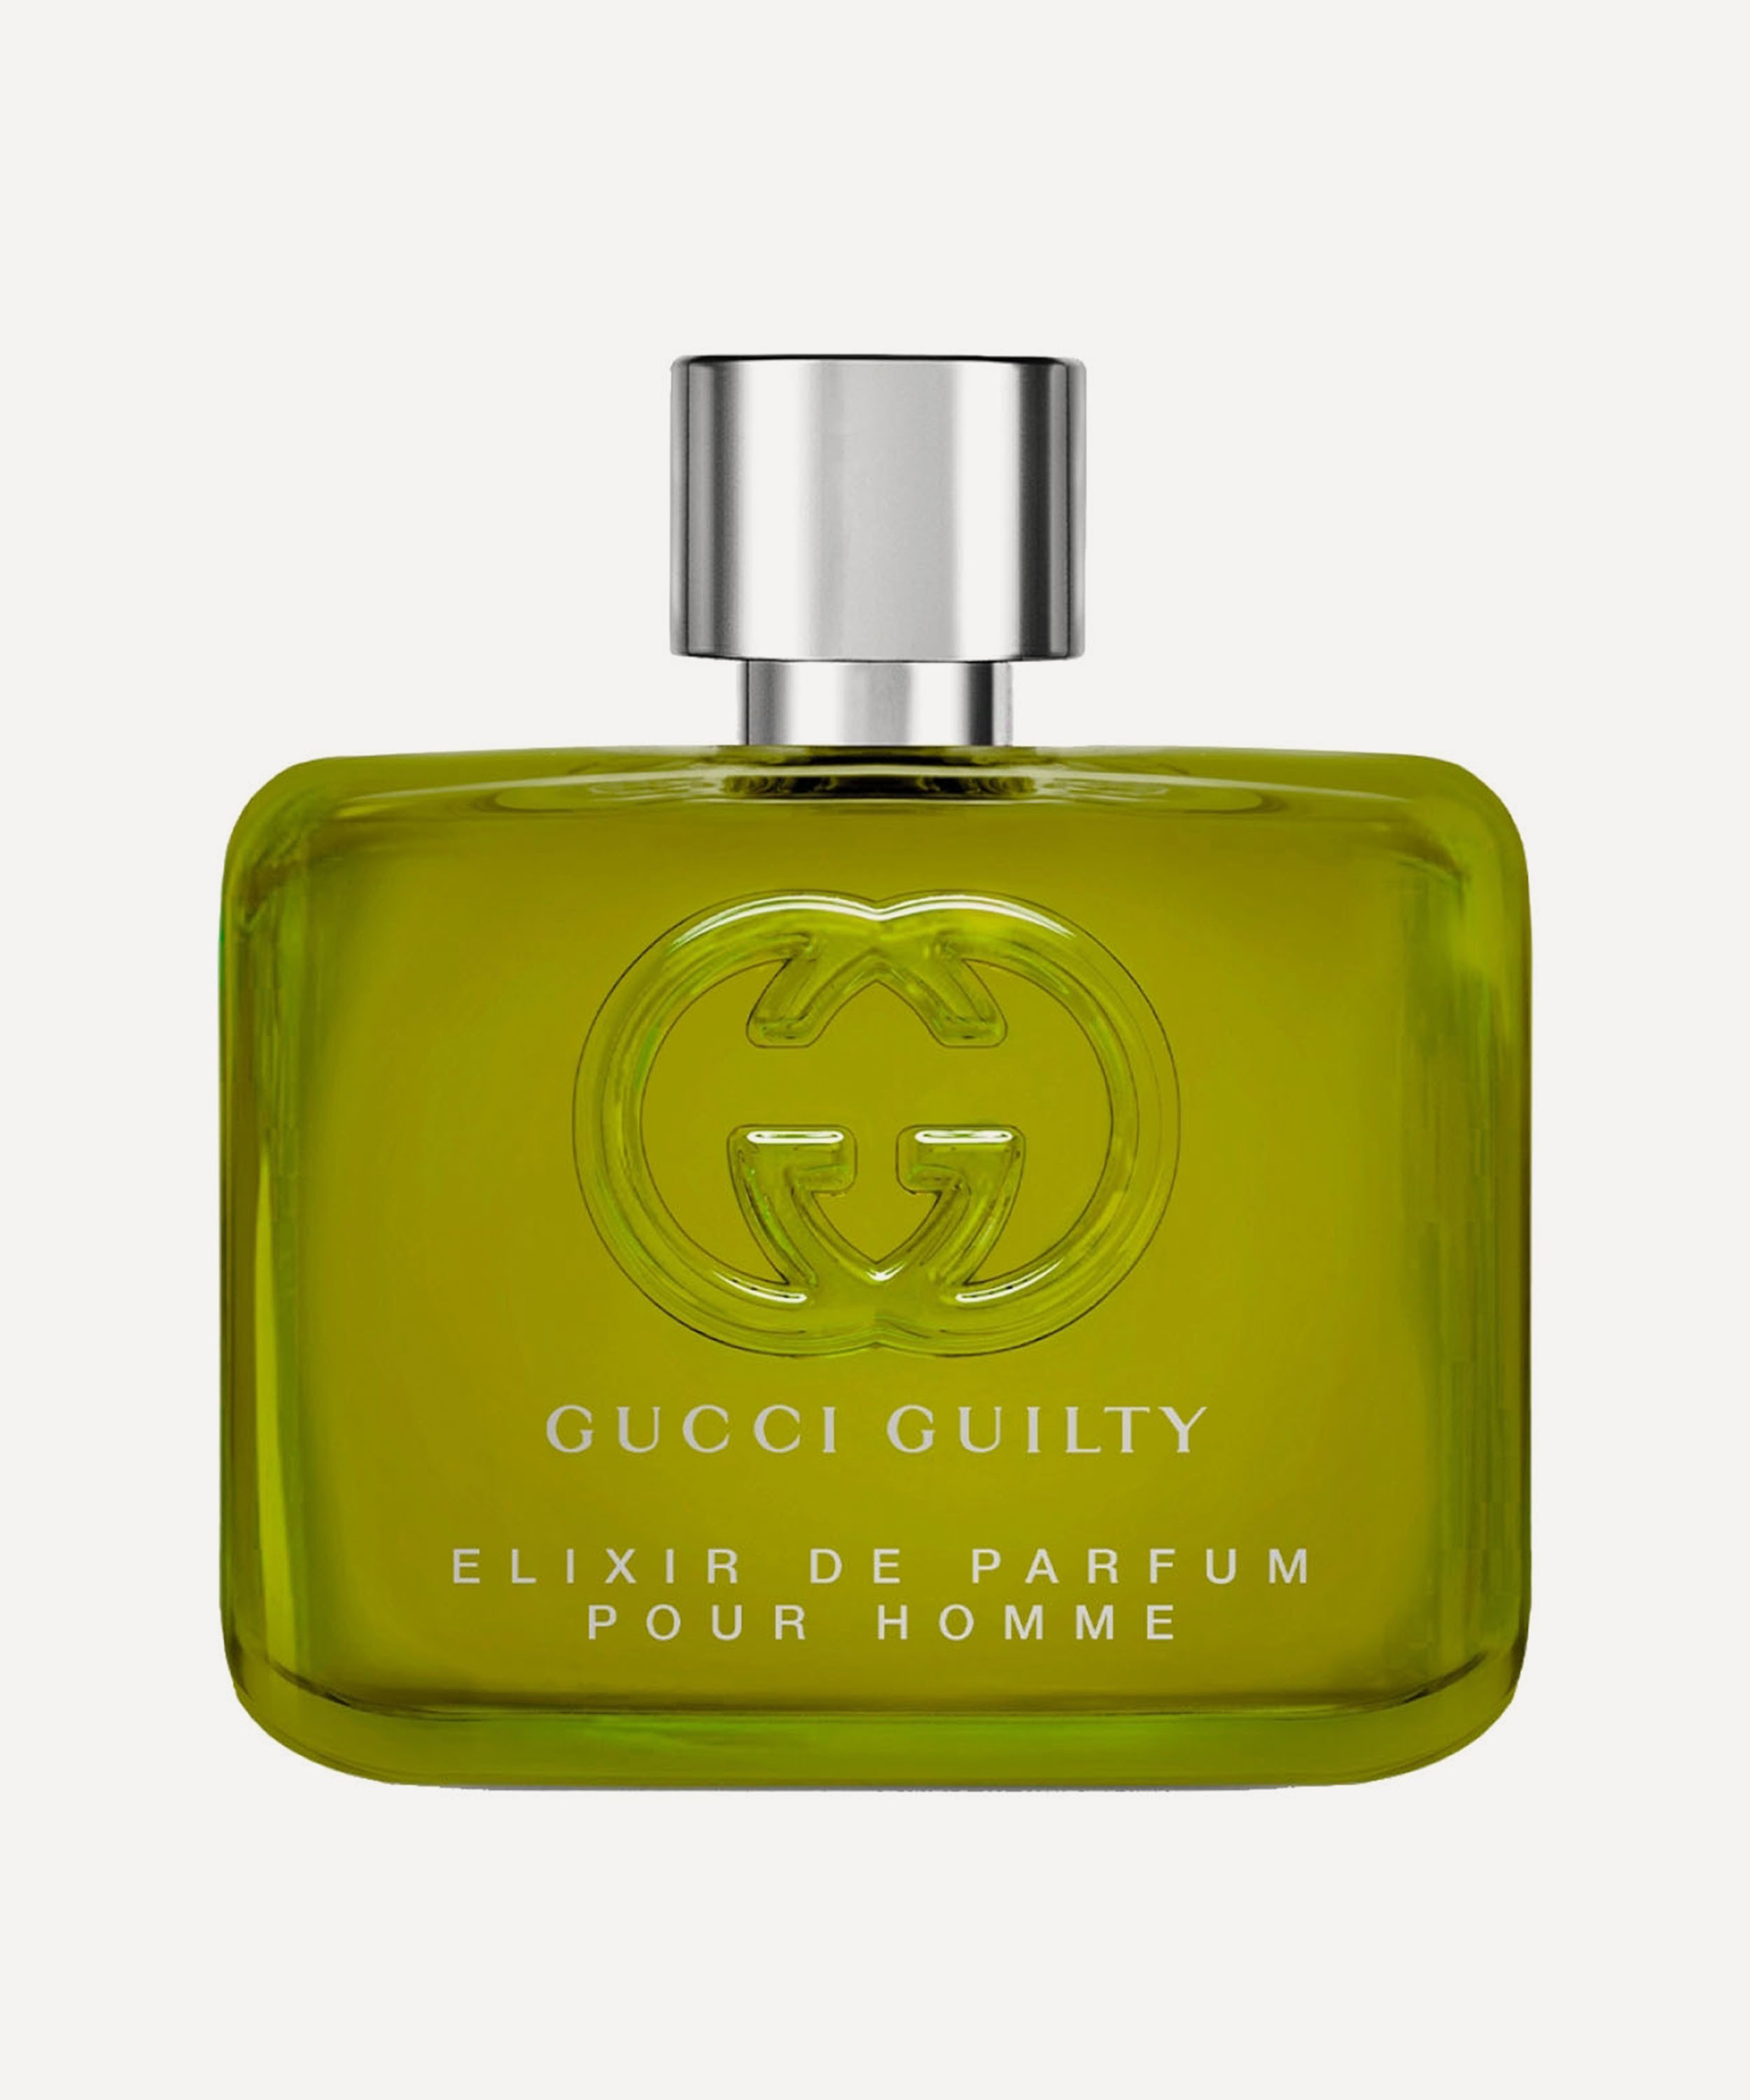 Gucci - Gucci Guilty Pour Homme Elixir de Parfum 60ml image number 0